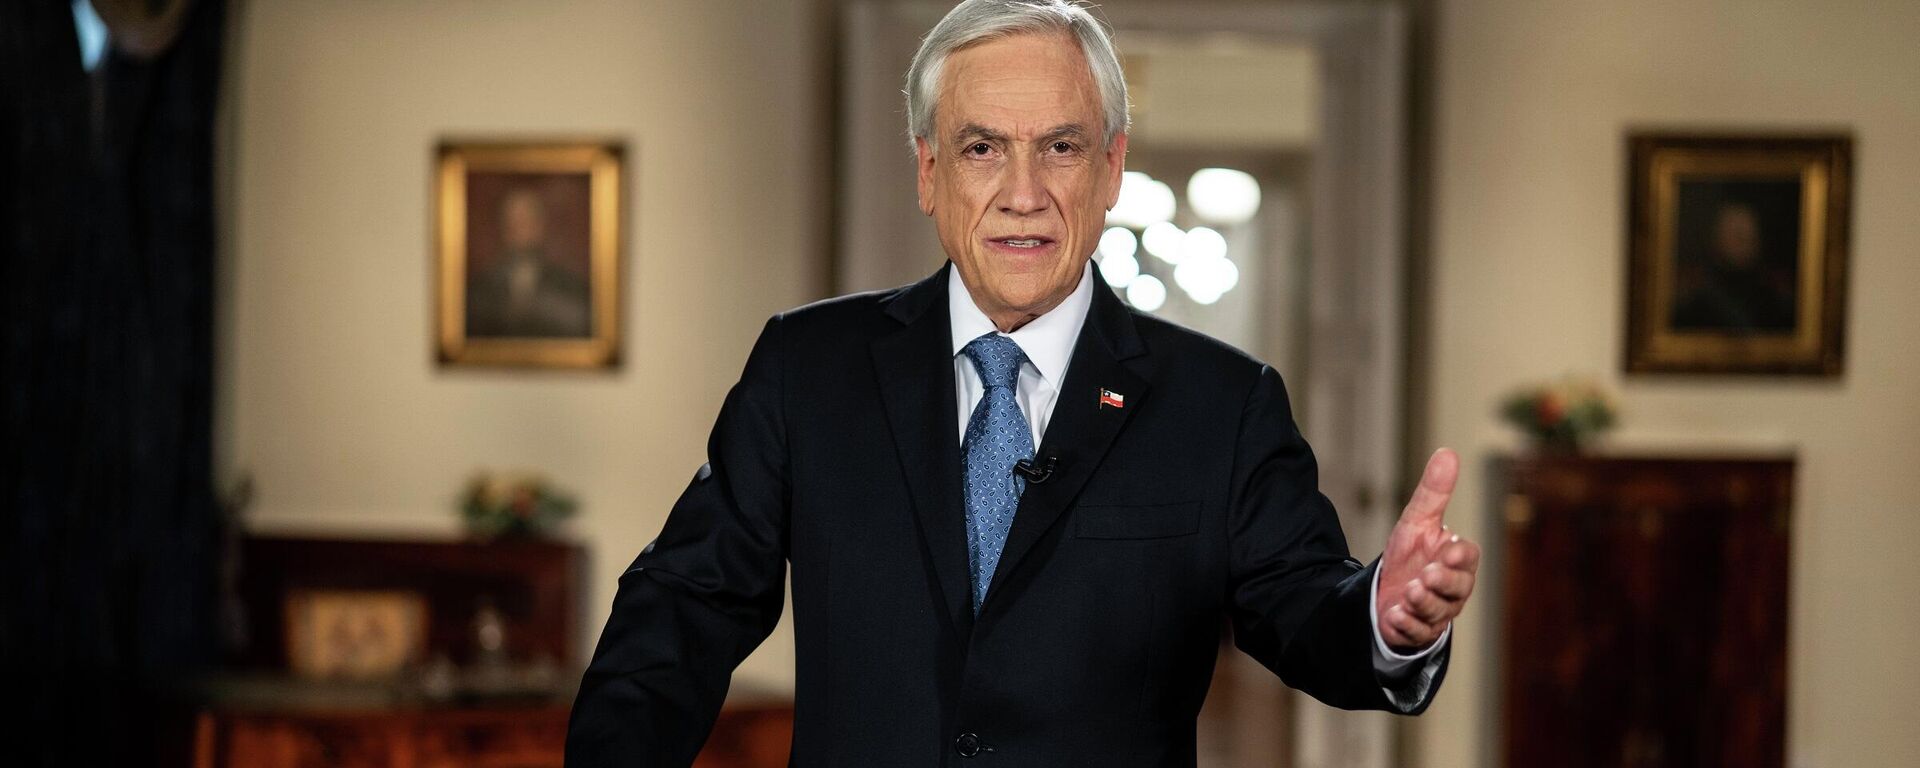 El presidente chileno, Sebastián Piñera, anuncia la mejora de sistema de pensiones en cadena nacional - Sputnik Mundo, 1920, 11.03.2021